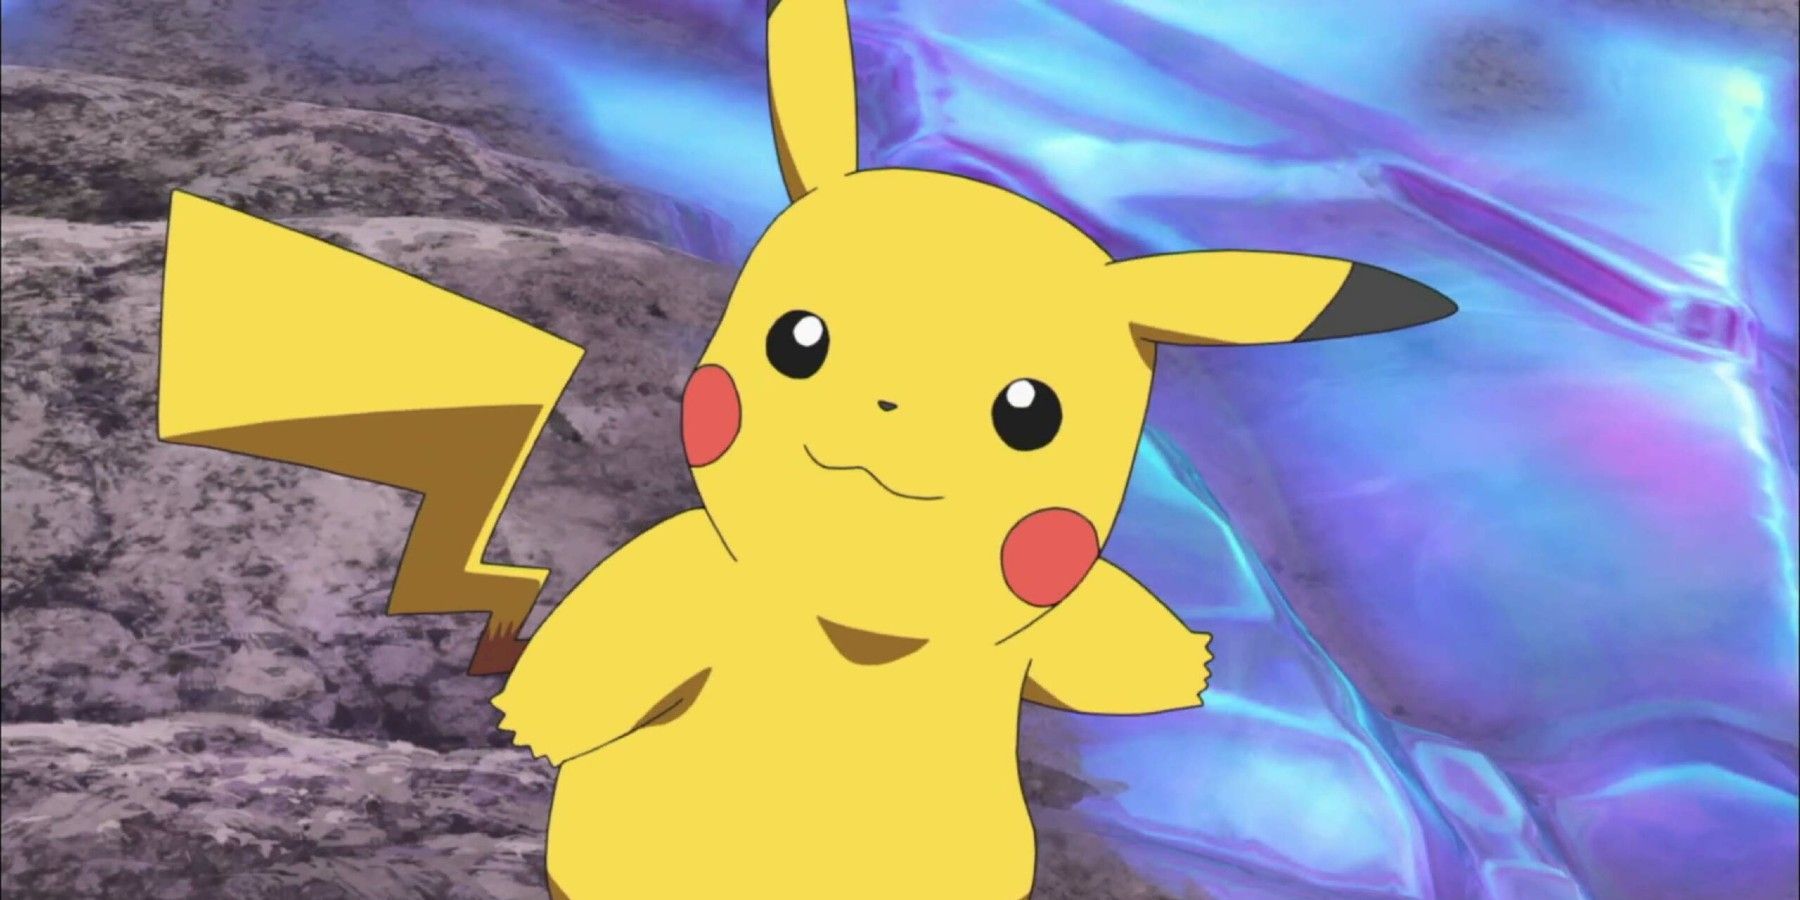 Pokemon Fan Makes Prop Sword Based on Pikachu's Tail